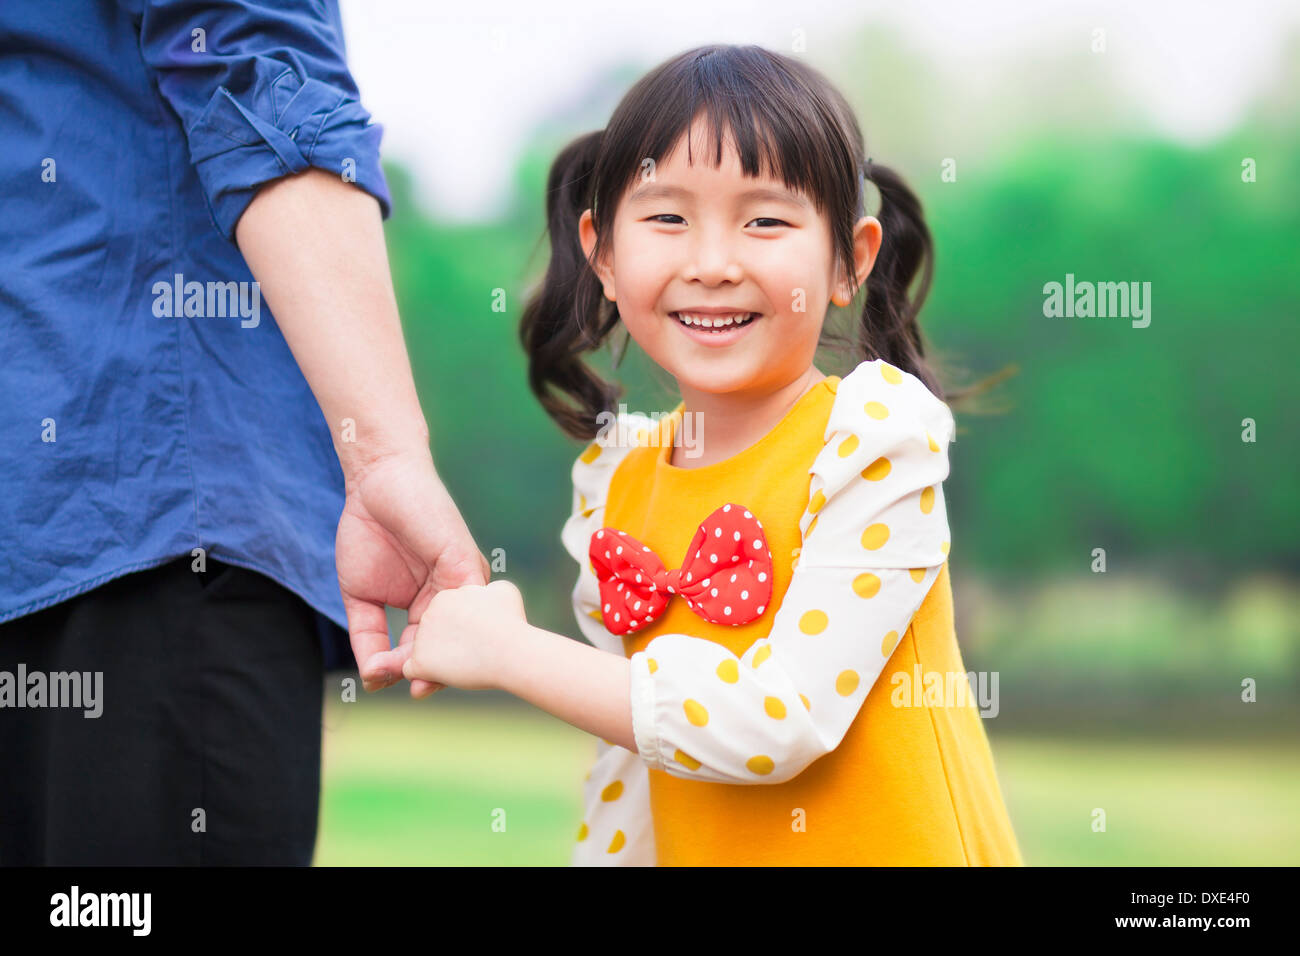 Pretty girl mantenga padre mano en el parque Foto de stock